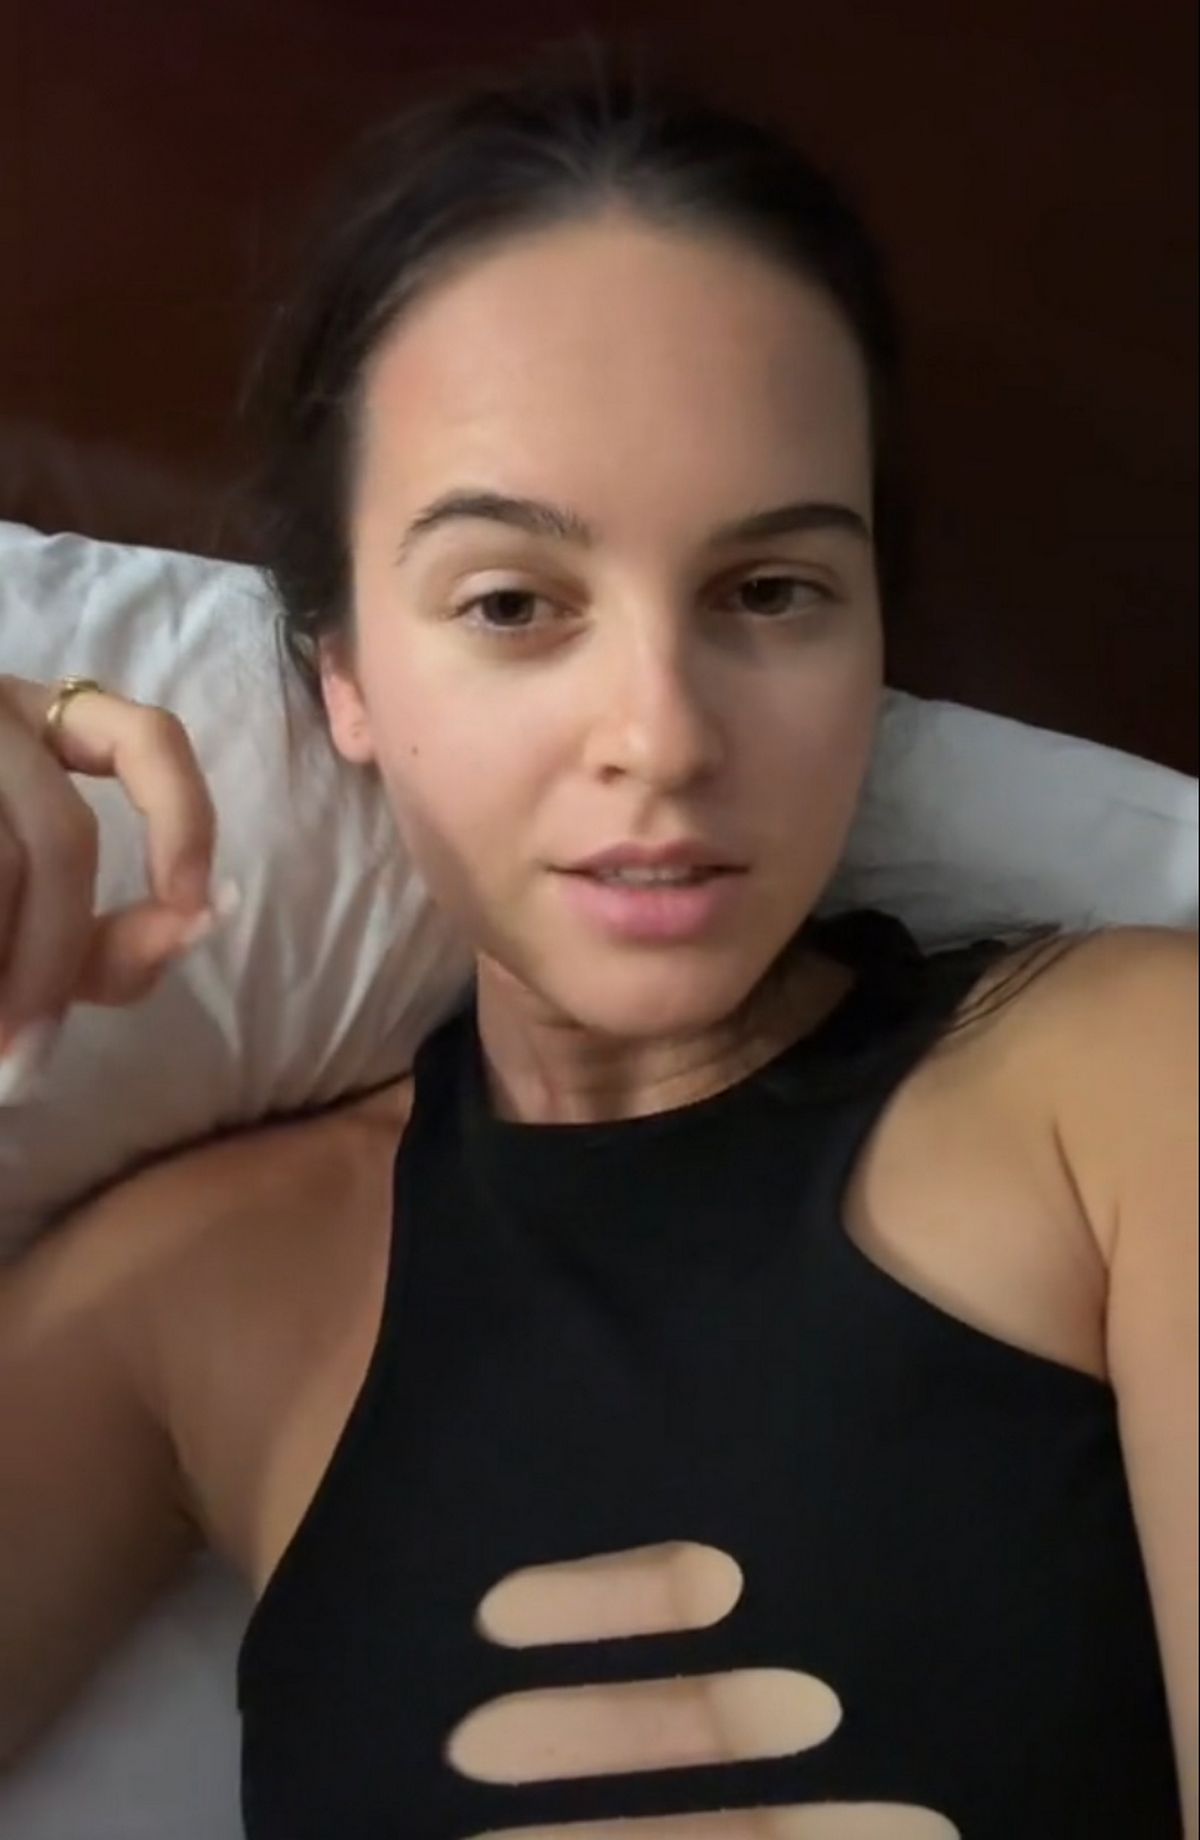 Sofia a partagé une vidéo présentant son mode de vie luxueux, grâce à son mari fortuné.